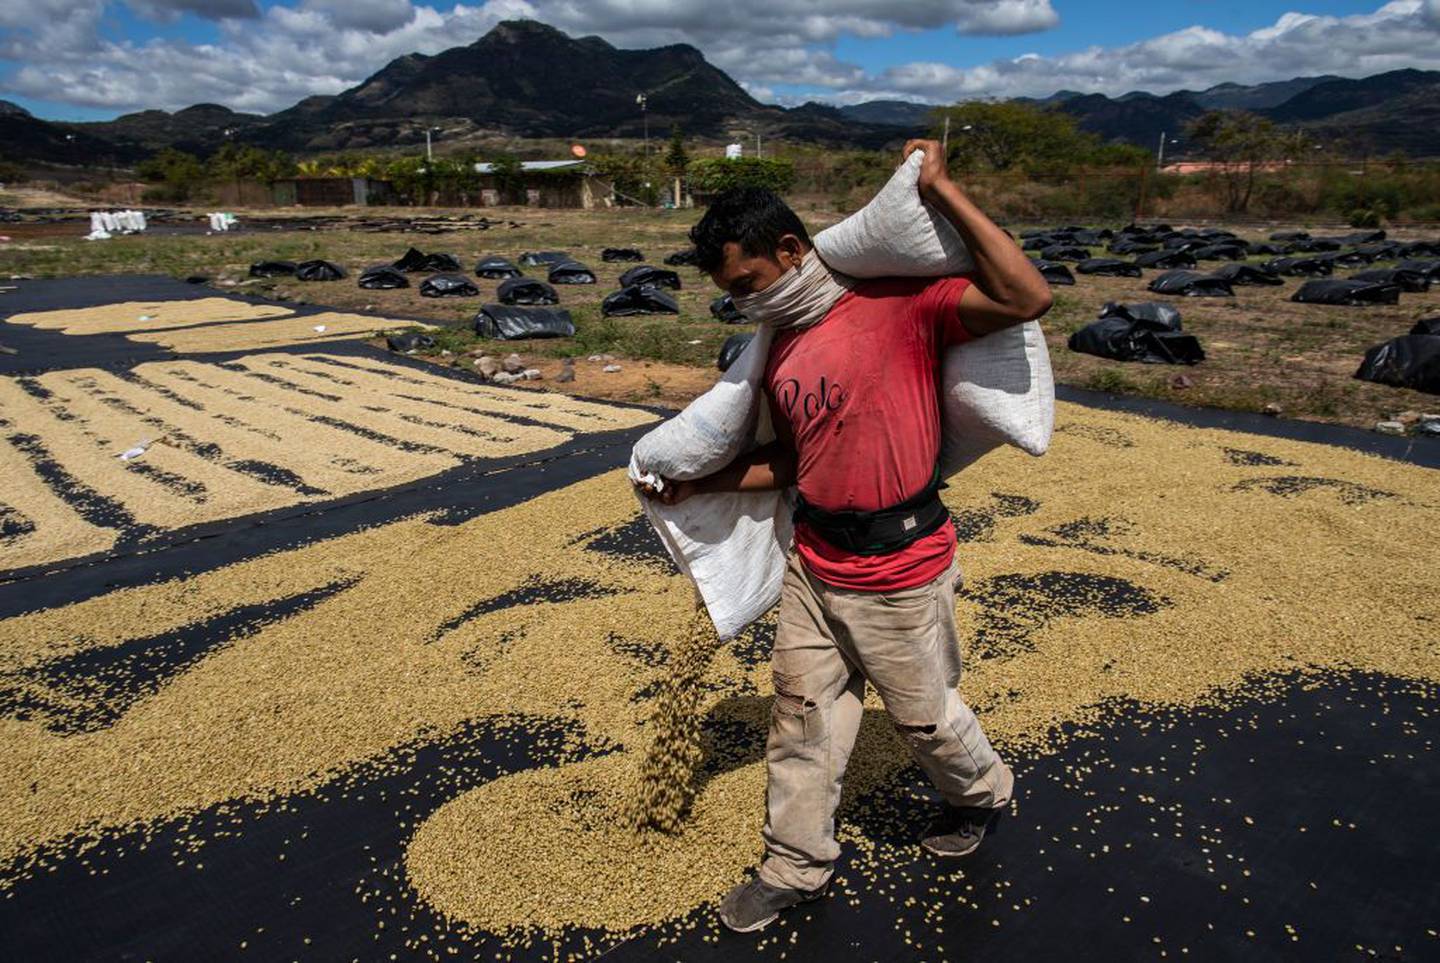 Un trabajador de la plantación vierte sacos de arpillera llenos de granos de café y los esparce para que se sequen al sol en la finca de café La Hammonia el 02 de febrero de 2021 en Metagalpa, Nicaragua.